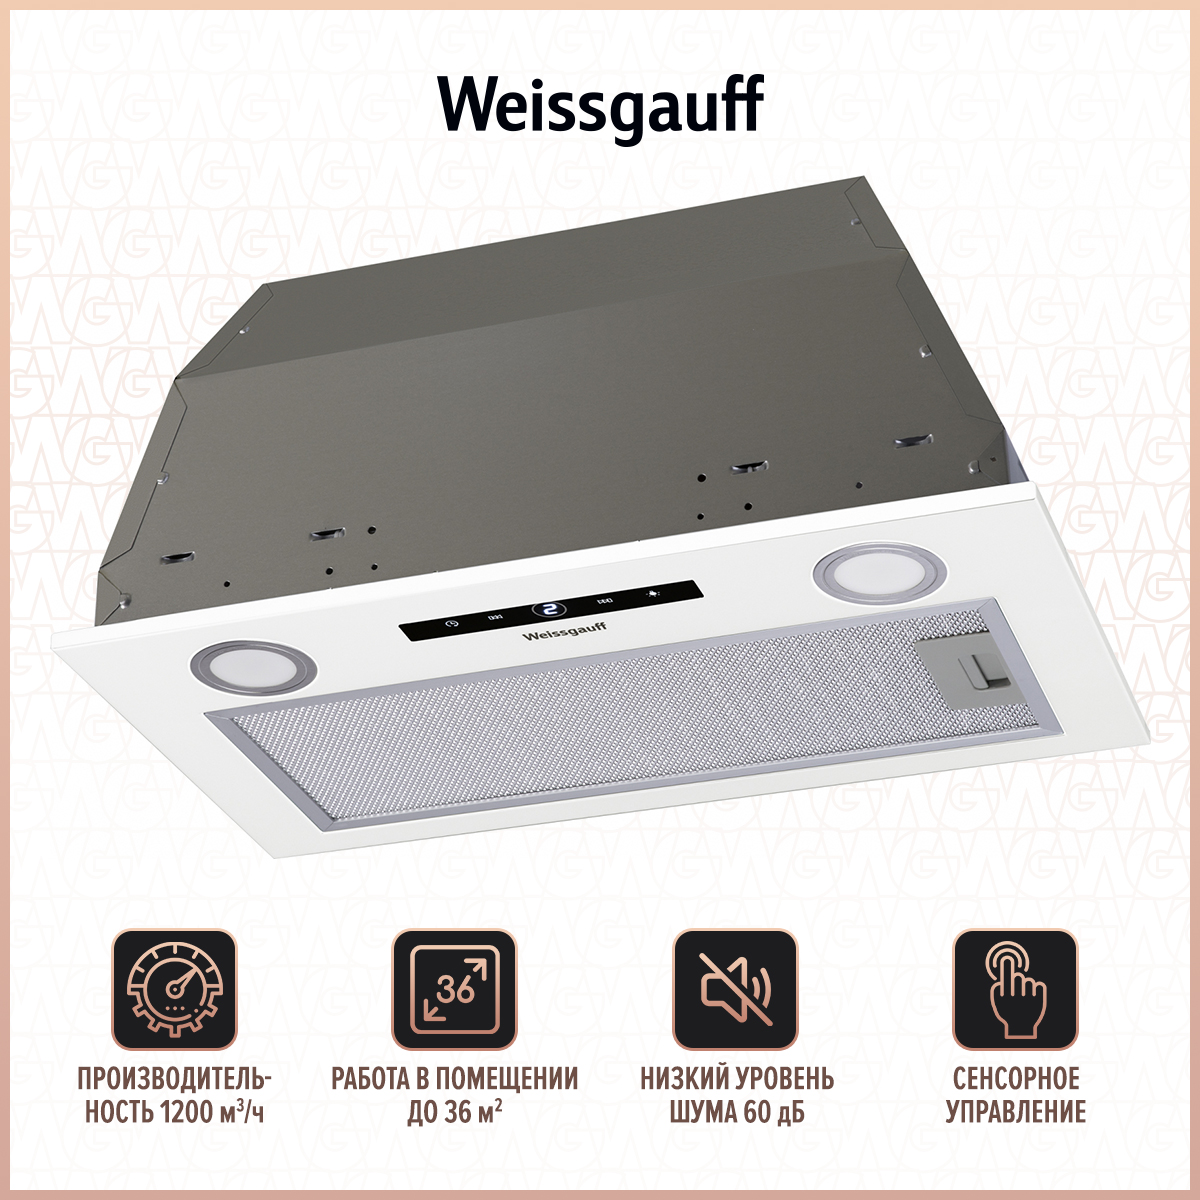 Вытяжка встраиваемая Weissgauff BOX 1200 WH White вытяжка встраиваемая weissgauff aura 900 wh белый